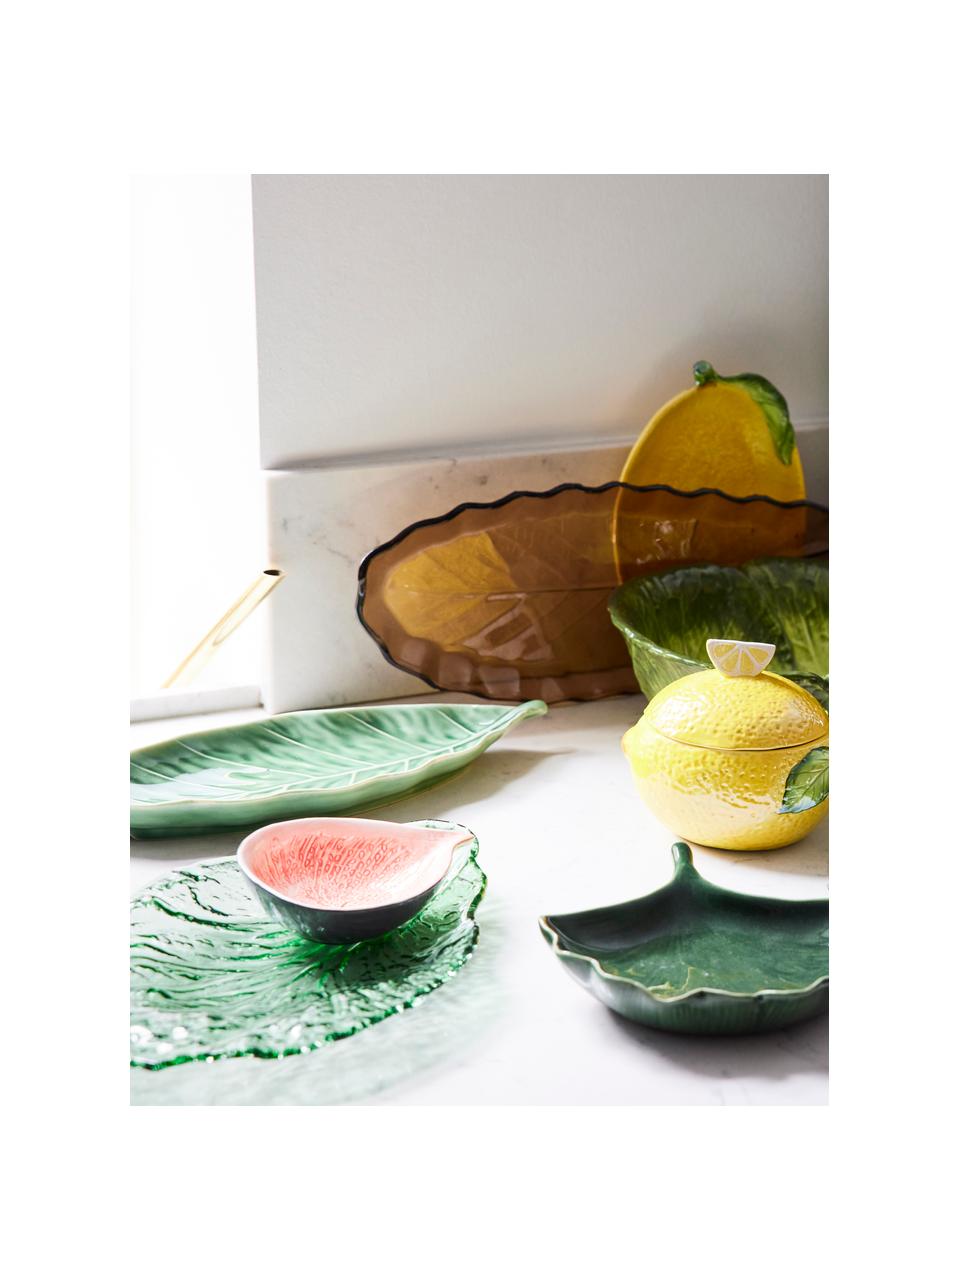 Glas serveerplateau Leaf in groen, L 28 x B 18 cm, Glas, Groen, transparant, L 28 x B 18 cm